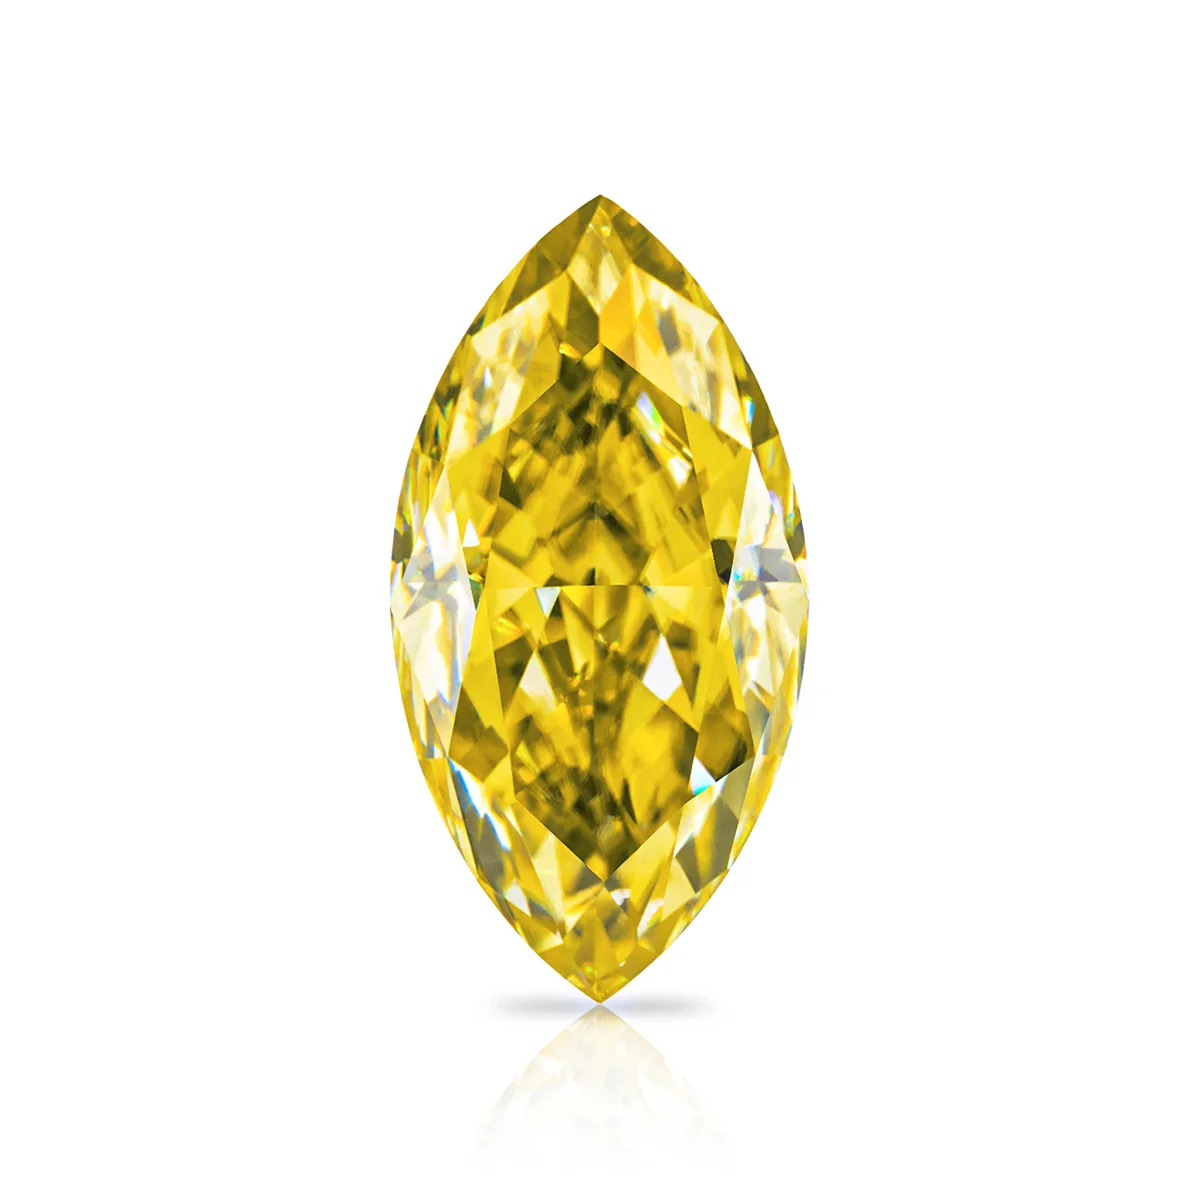 

Лимонно-жёлтый драгоценный камень, вырезанный ярко-желтым цветом, с сертификатом в виде кода талии, бриллиантовый драгоценный камень, отлично подходит для изготовления ювелирных изделий на заказ